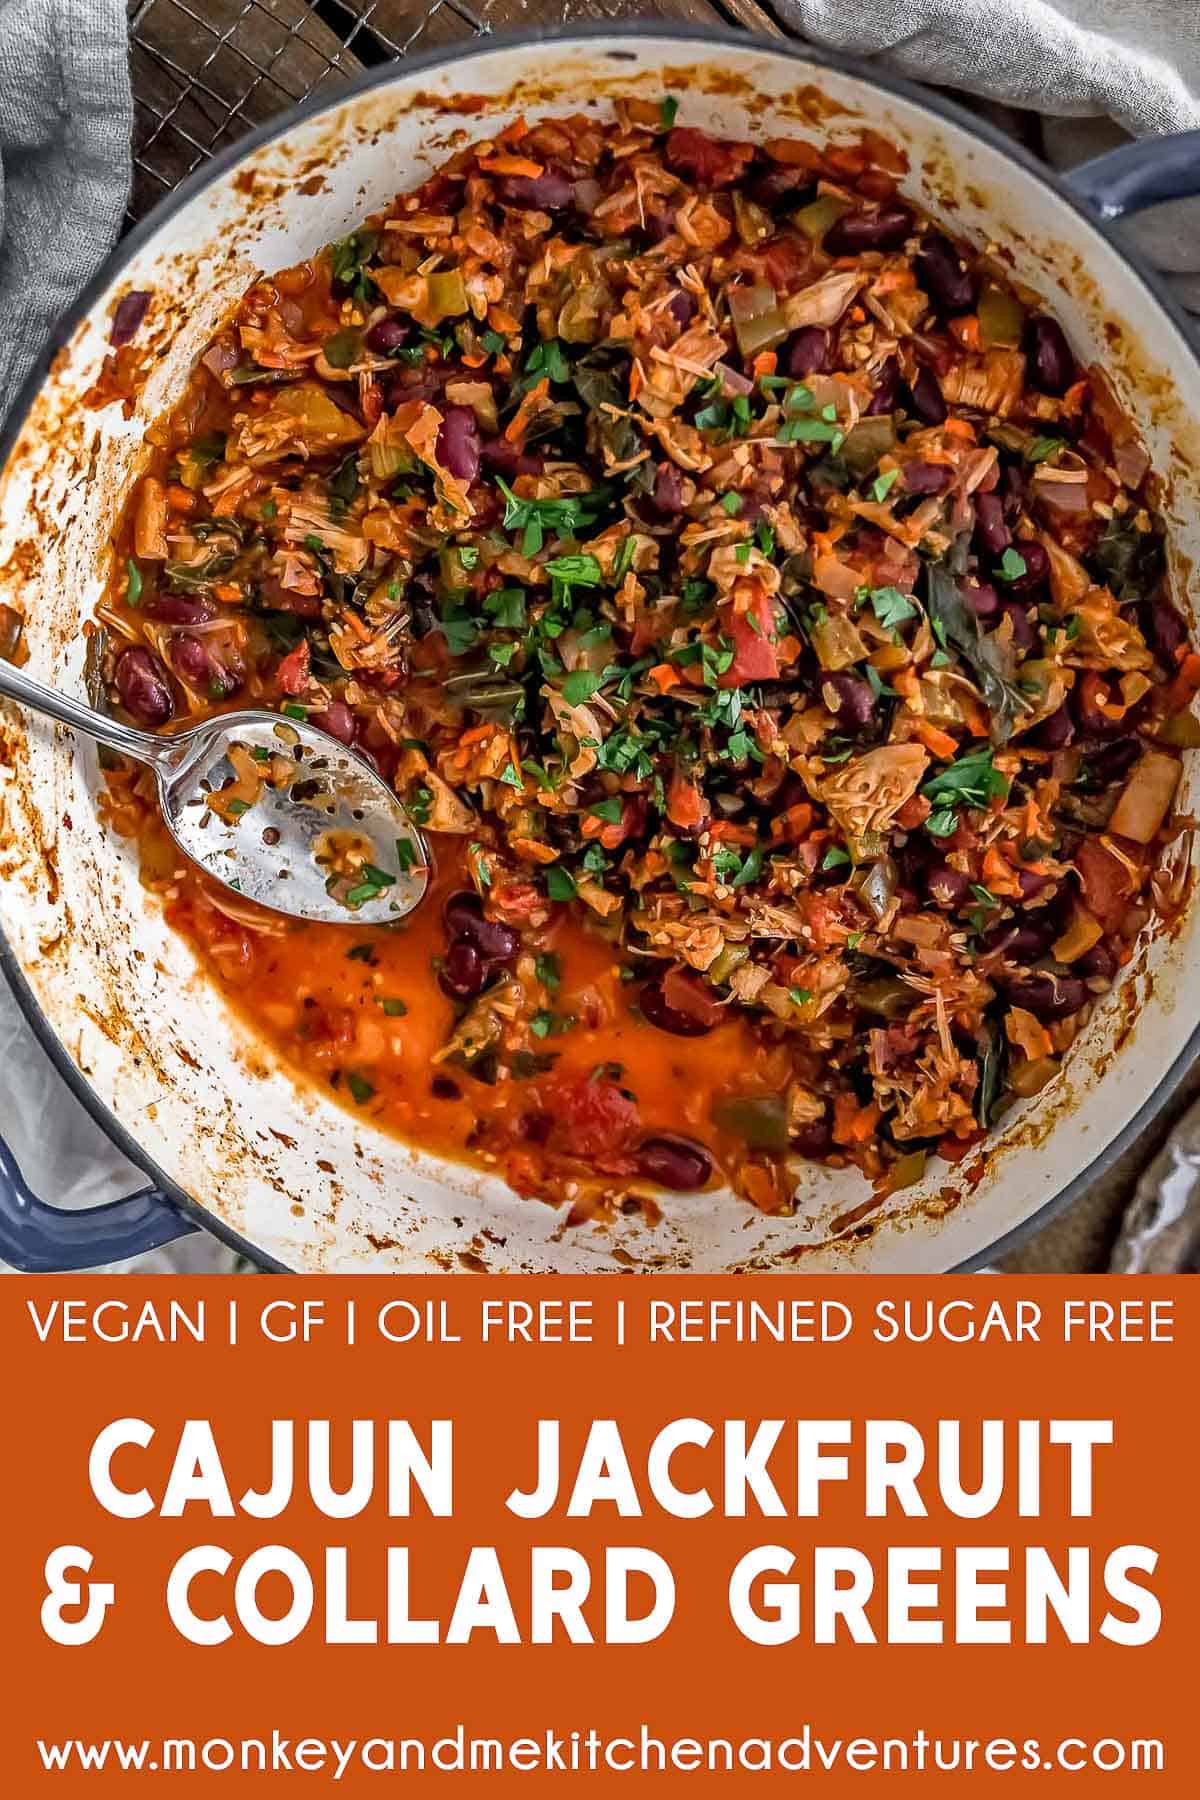 Cajun Jackfruit and Collard Greens with text description